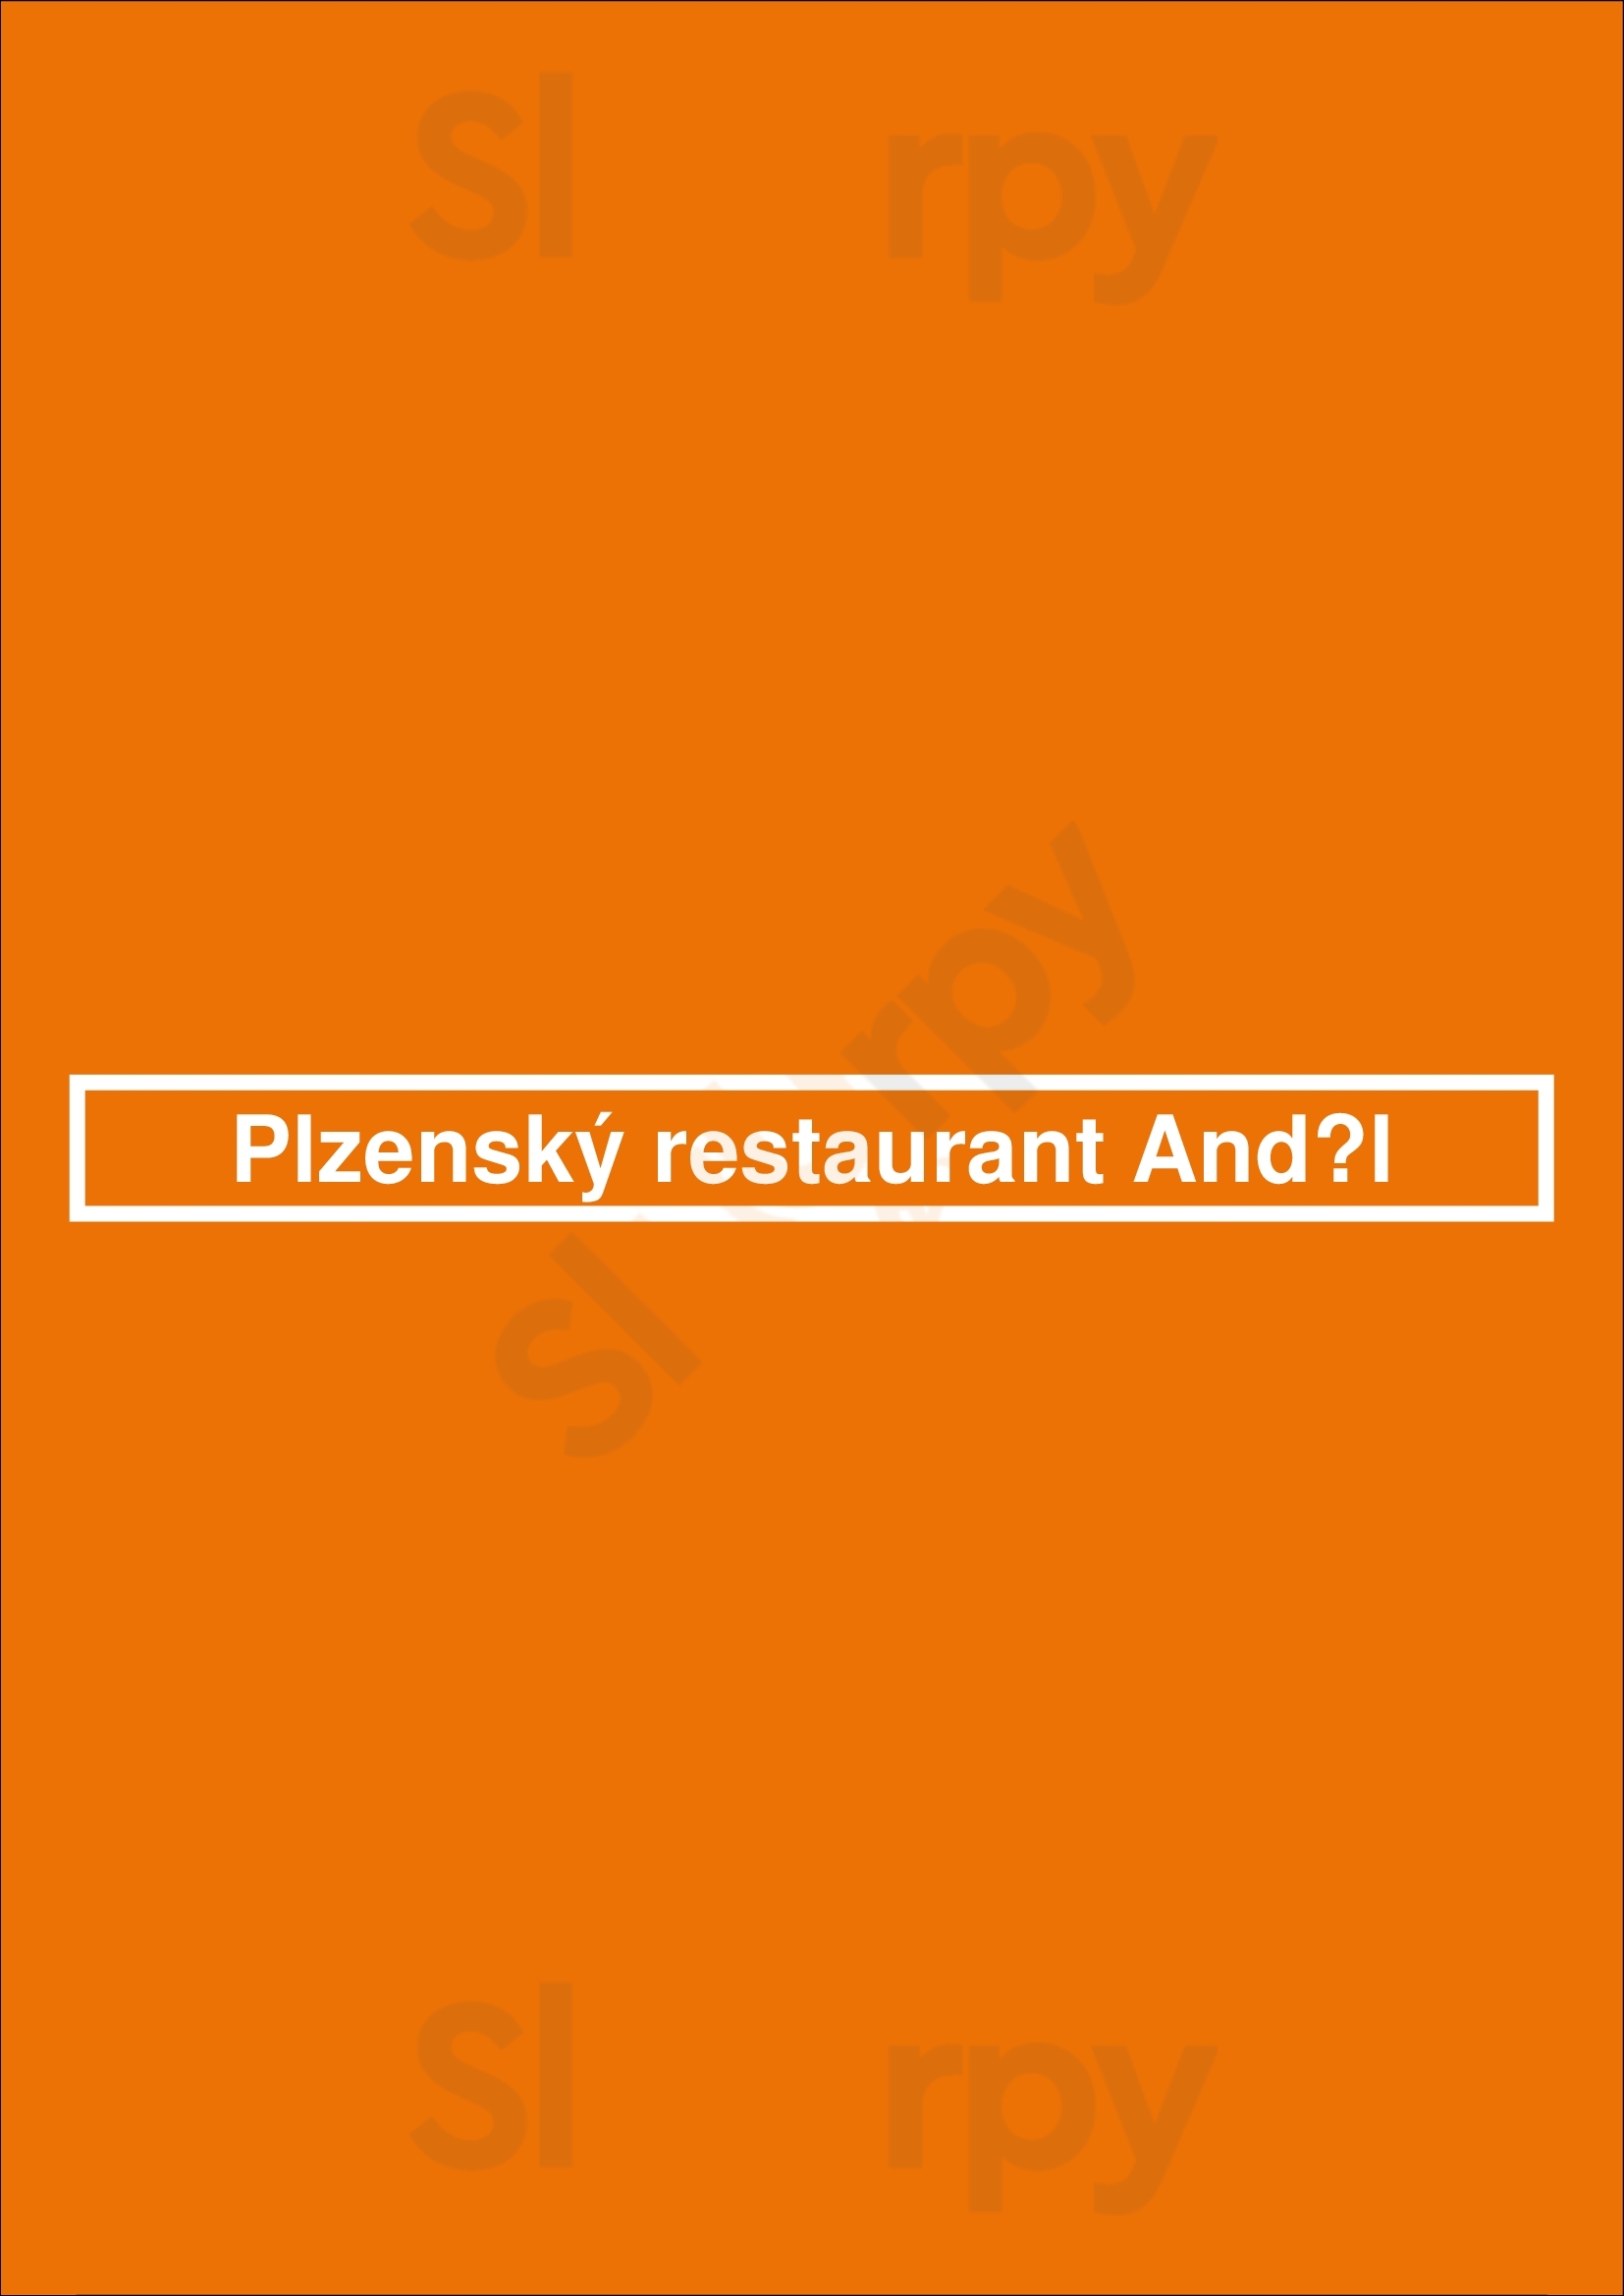 Plzenský Restaurant Anděl Praha Menu - 1